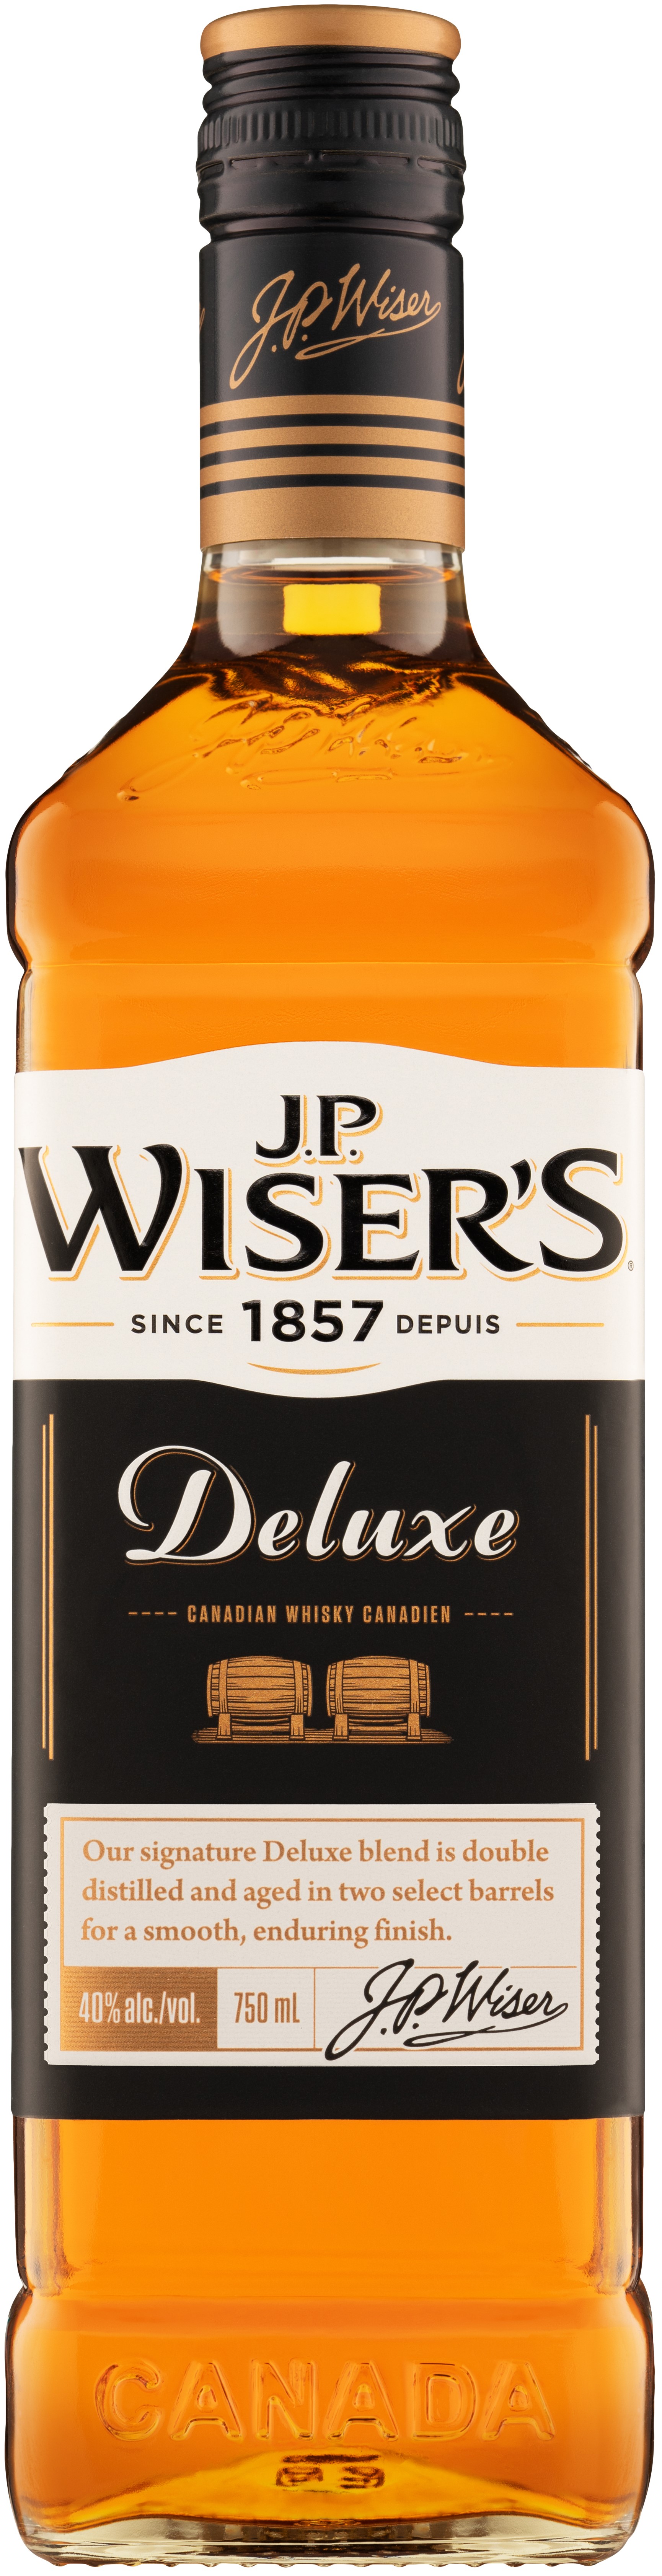 J.P. Wiser's Deluxe 750ml